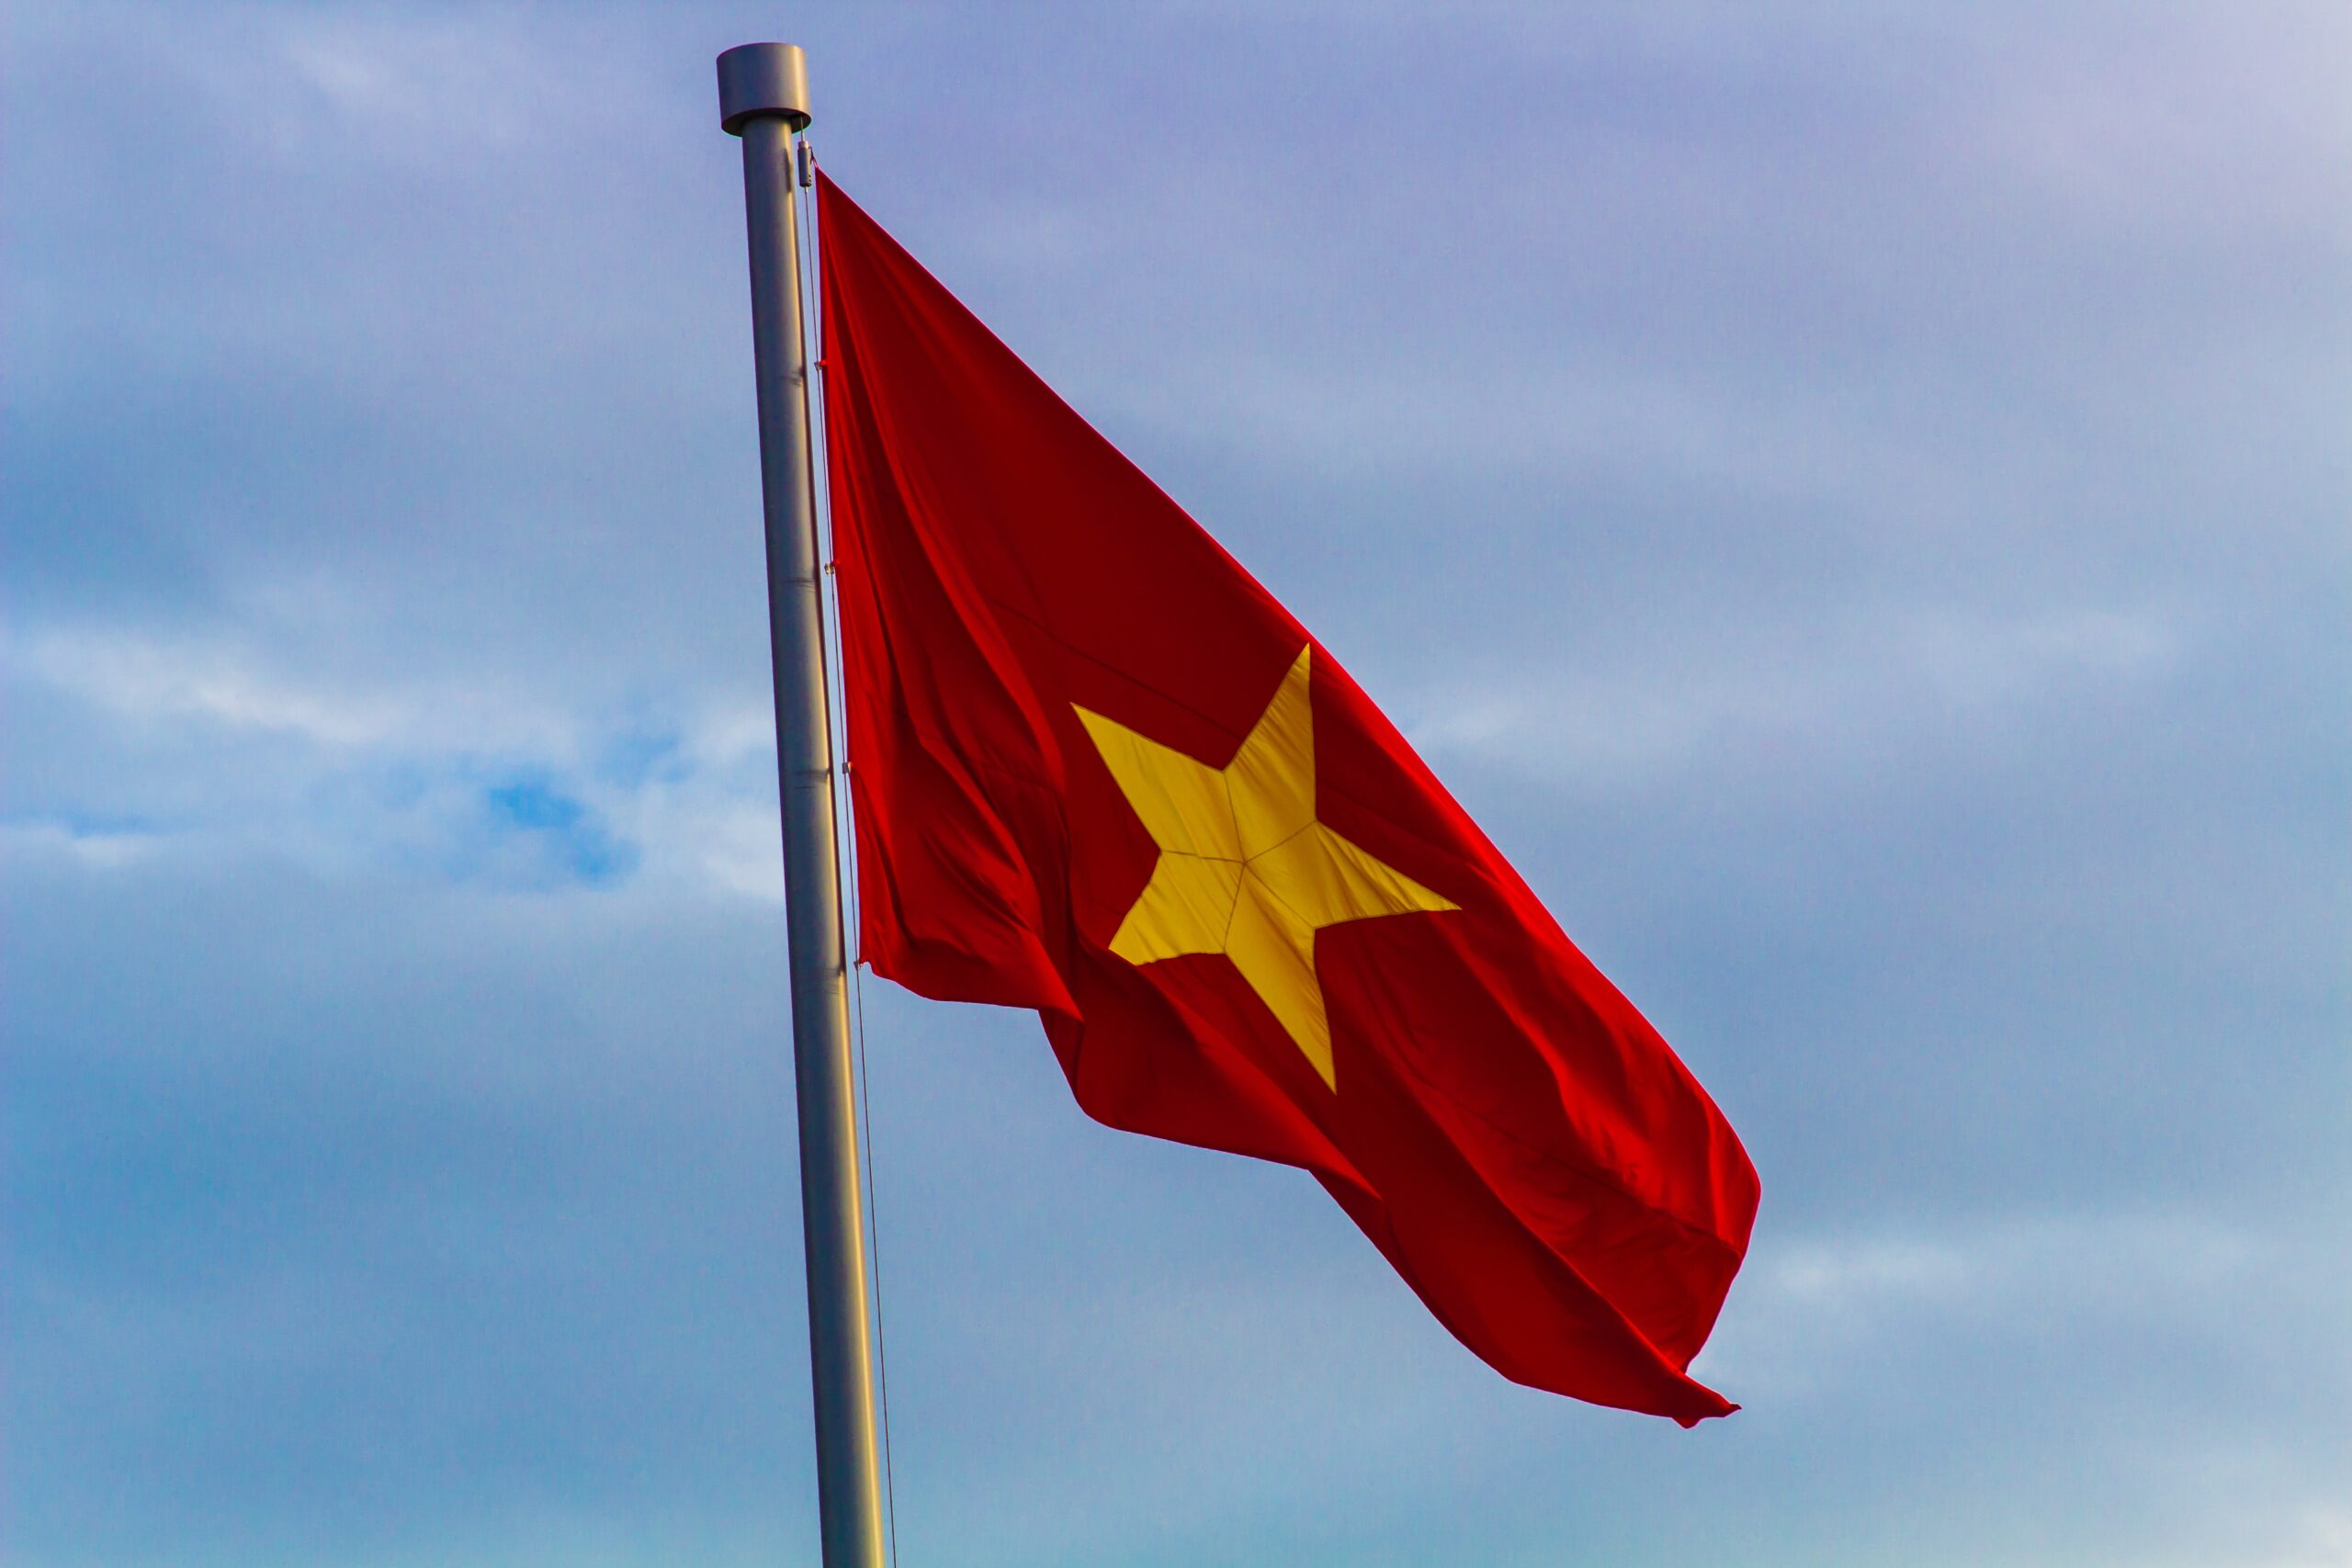 Cờ đỏ sao vàng: 2024 - Một biểu tượng đầy ý nghĩa và vẻ đẹp cho quốc gia Việt Nam. Cờ đỏ sao vàng mang đến sự kiêu hãnh và sức mạnh cho người dân Việt. Hãy để bản thân của bạn được tôn lên với cờ đỏ sao vàng, để niềm tự hào của bạn với quốc gia Việt Nam được thể hiện rõ ràng.